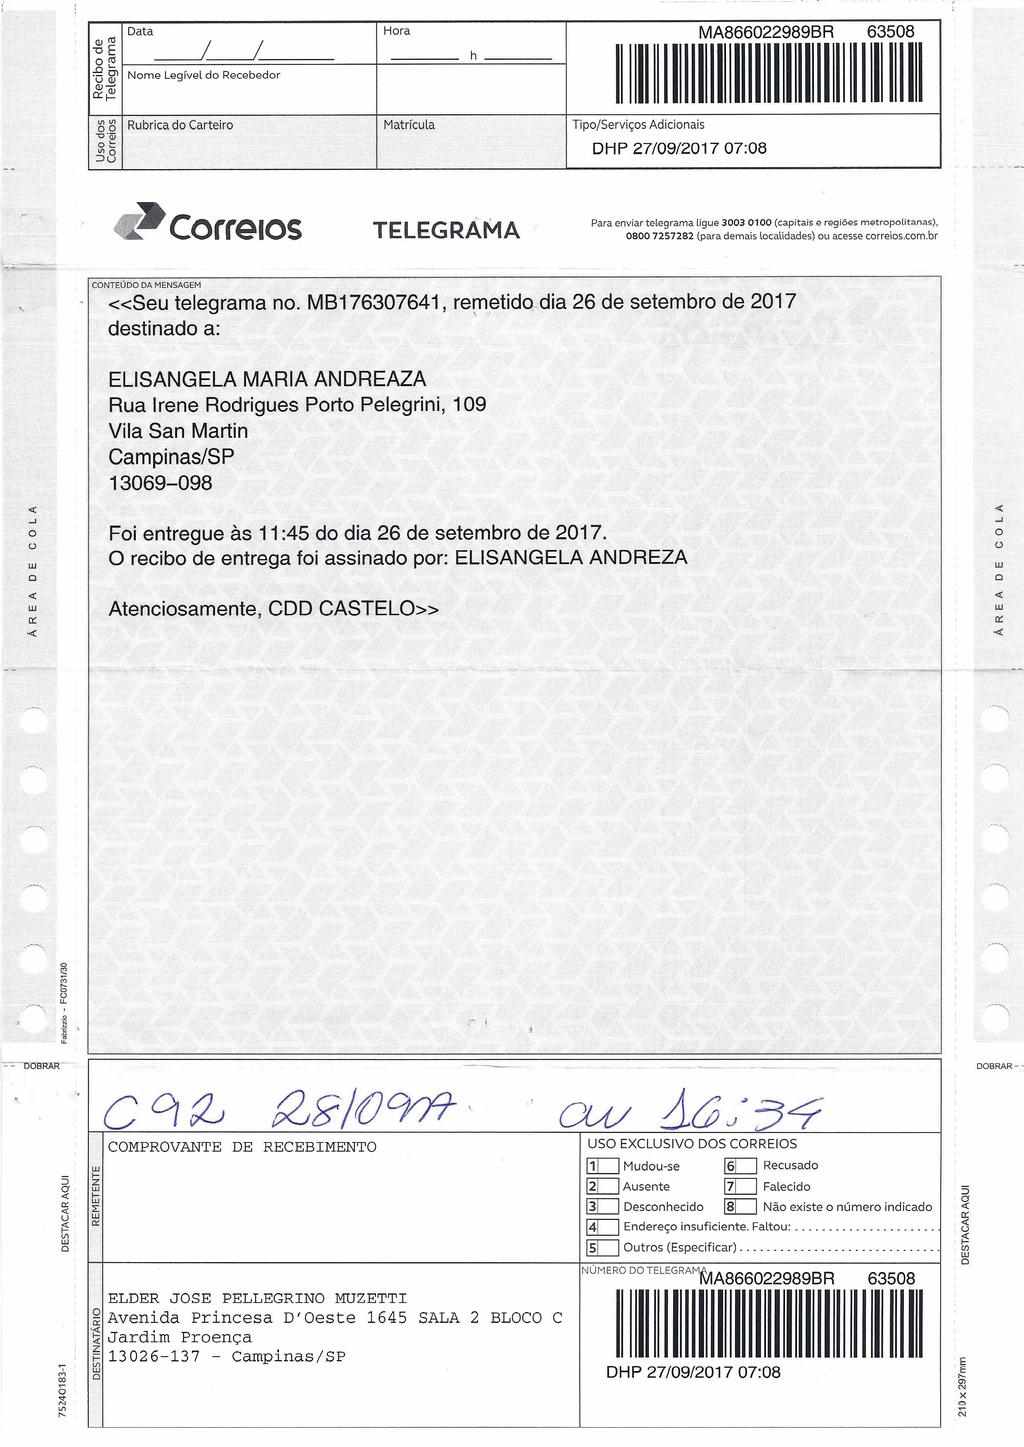 fls. 77 Este documento é cópia do original, assinado digitalmente por ELDER JOSE PELLEGRINO MUZETTI e Tribunal de Justica do Estado de Sao Paulo, protocolado em 03/10/2017 às 17:02, sob o